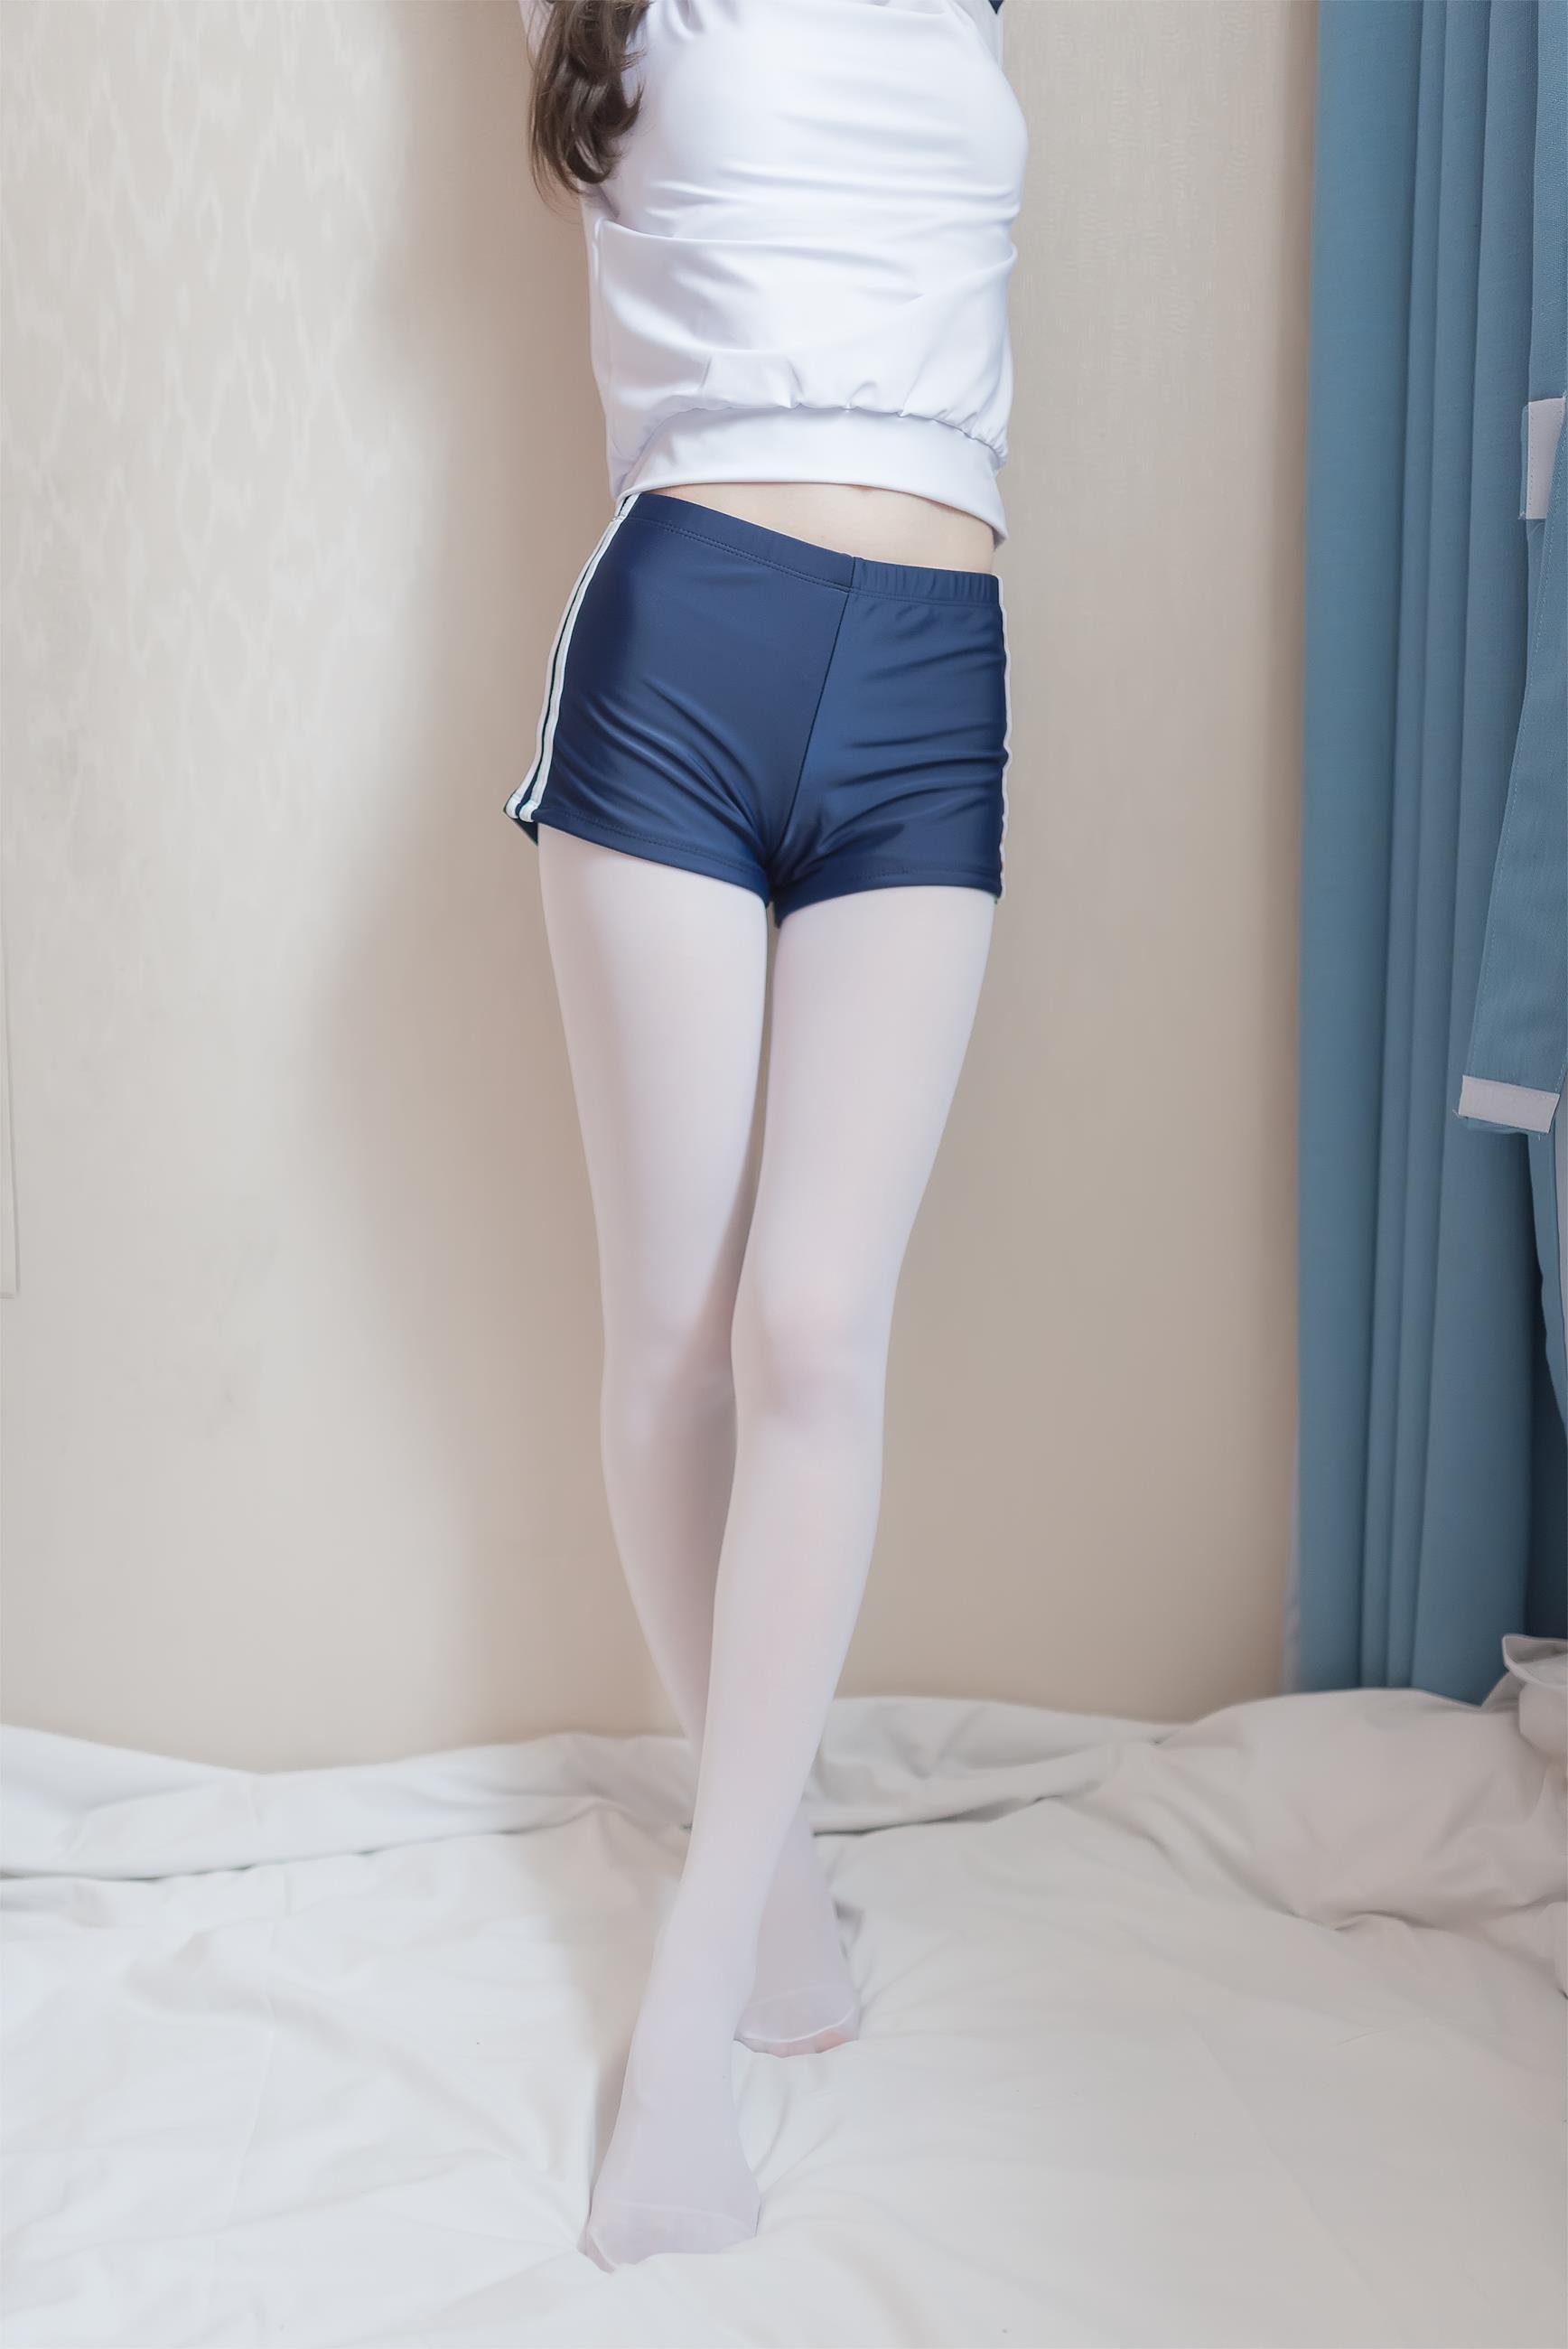 [风之领域]NO.006 清纯可爱小萝莉 白色短袖与蓝色短裤加白色丝袜美腿玉足性感私房写真集,